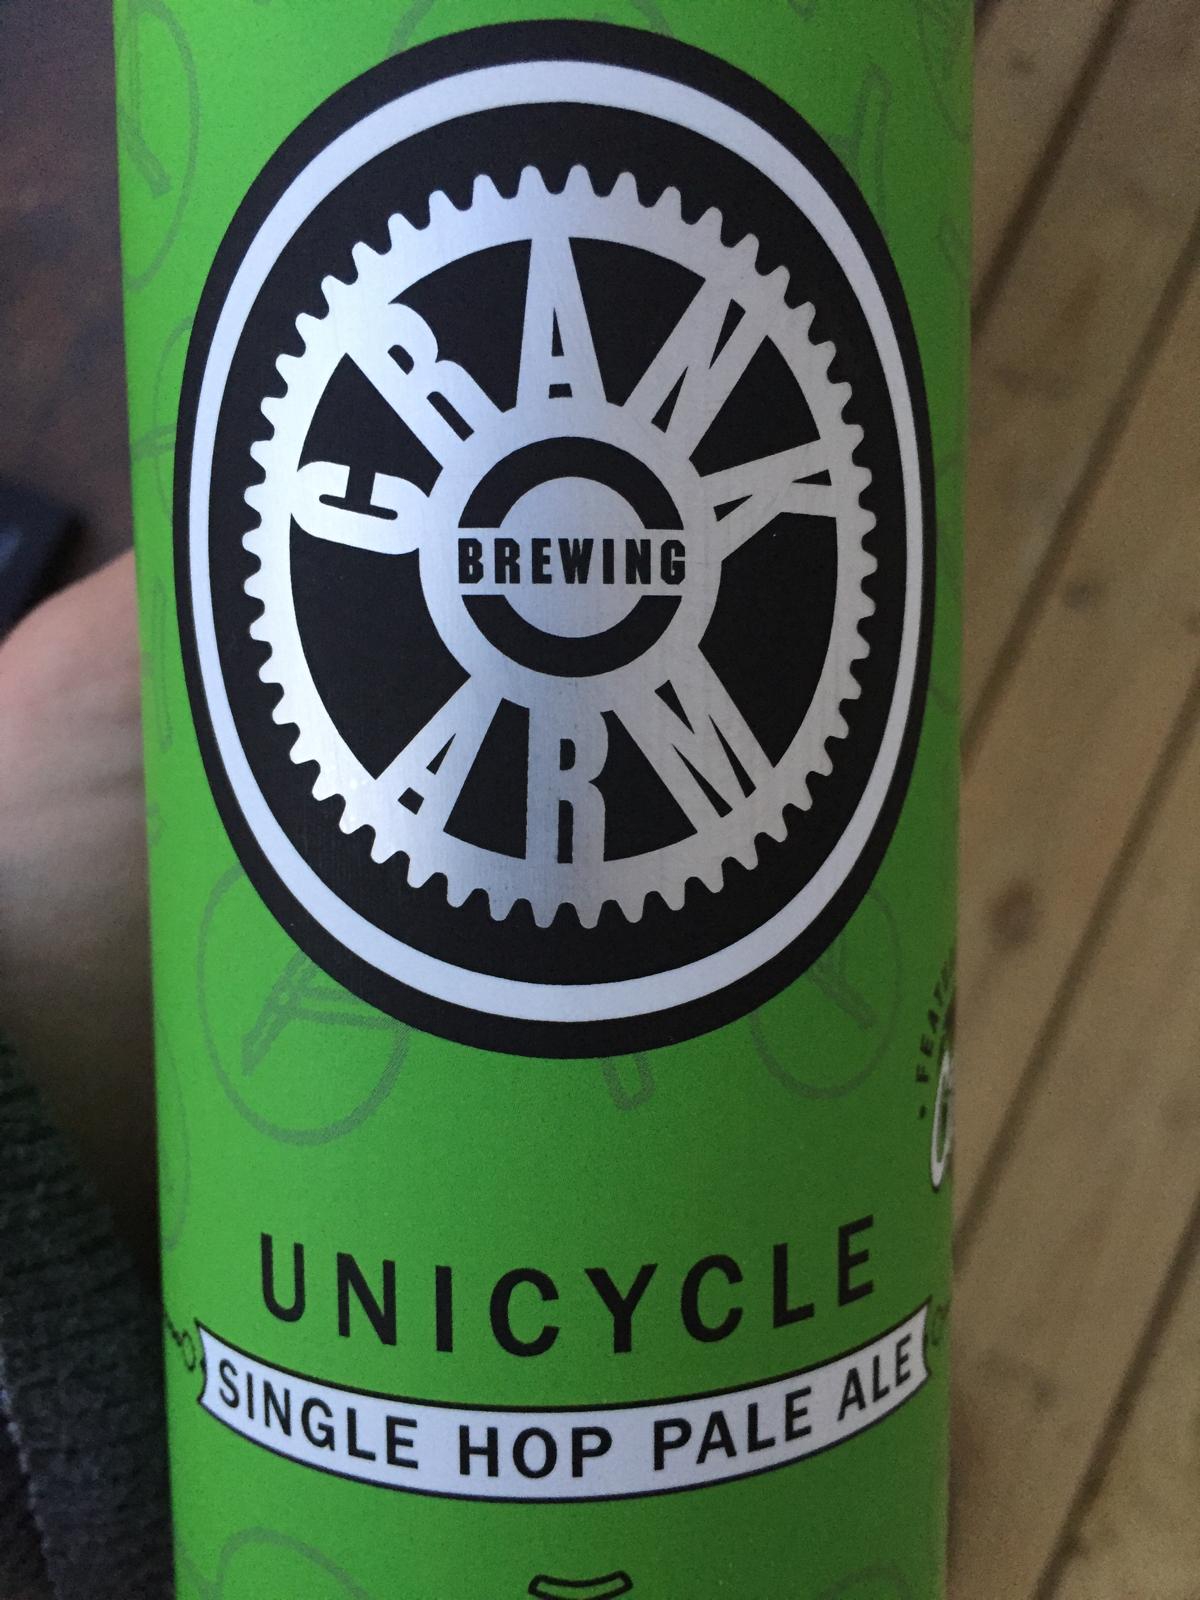 Unicycle Single Hop Pale Ale (Citra)